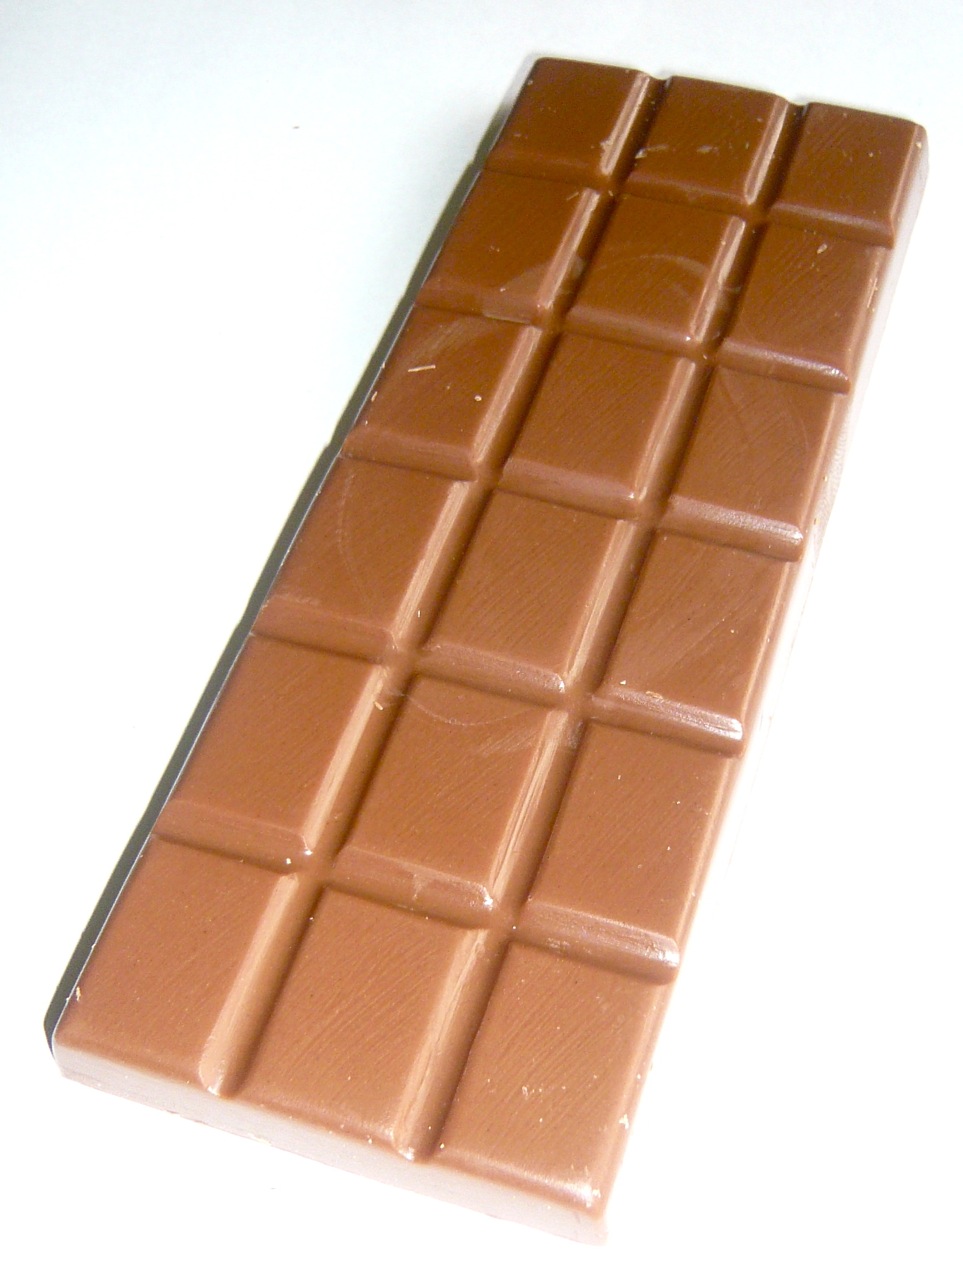 Обычную шоколадку. Обычный шоколад. Молочный шоколад. Небольшие шоколадки. Обычная шоколадка.